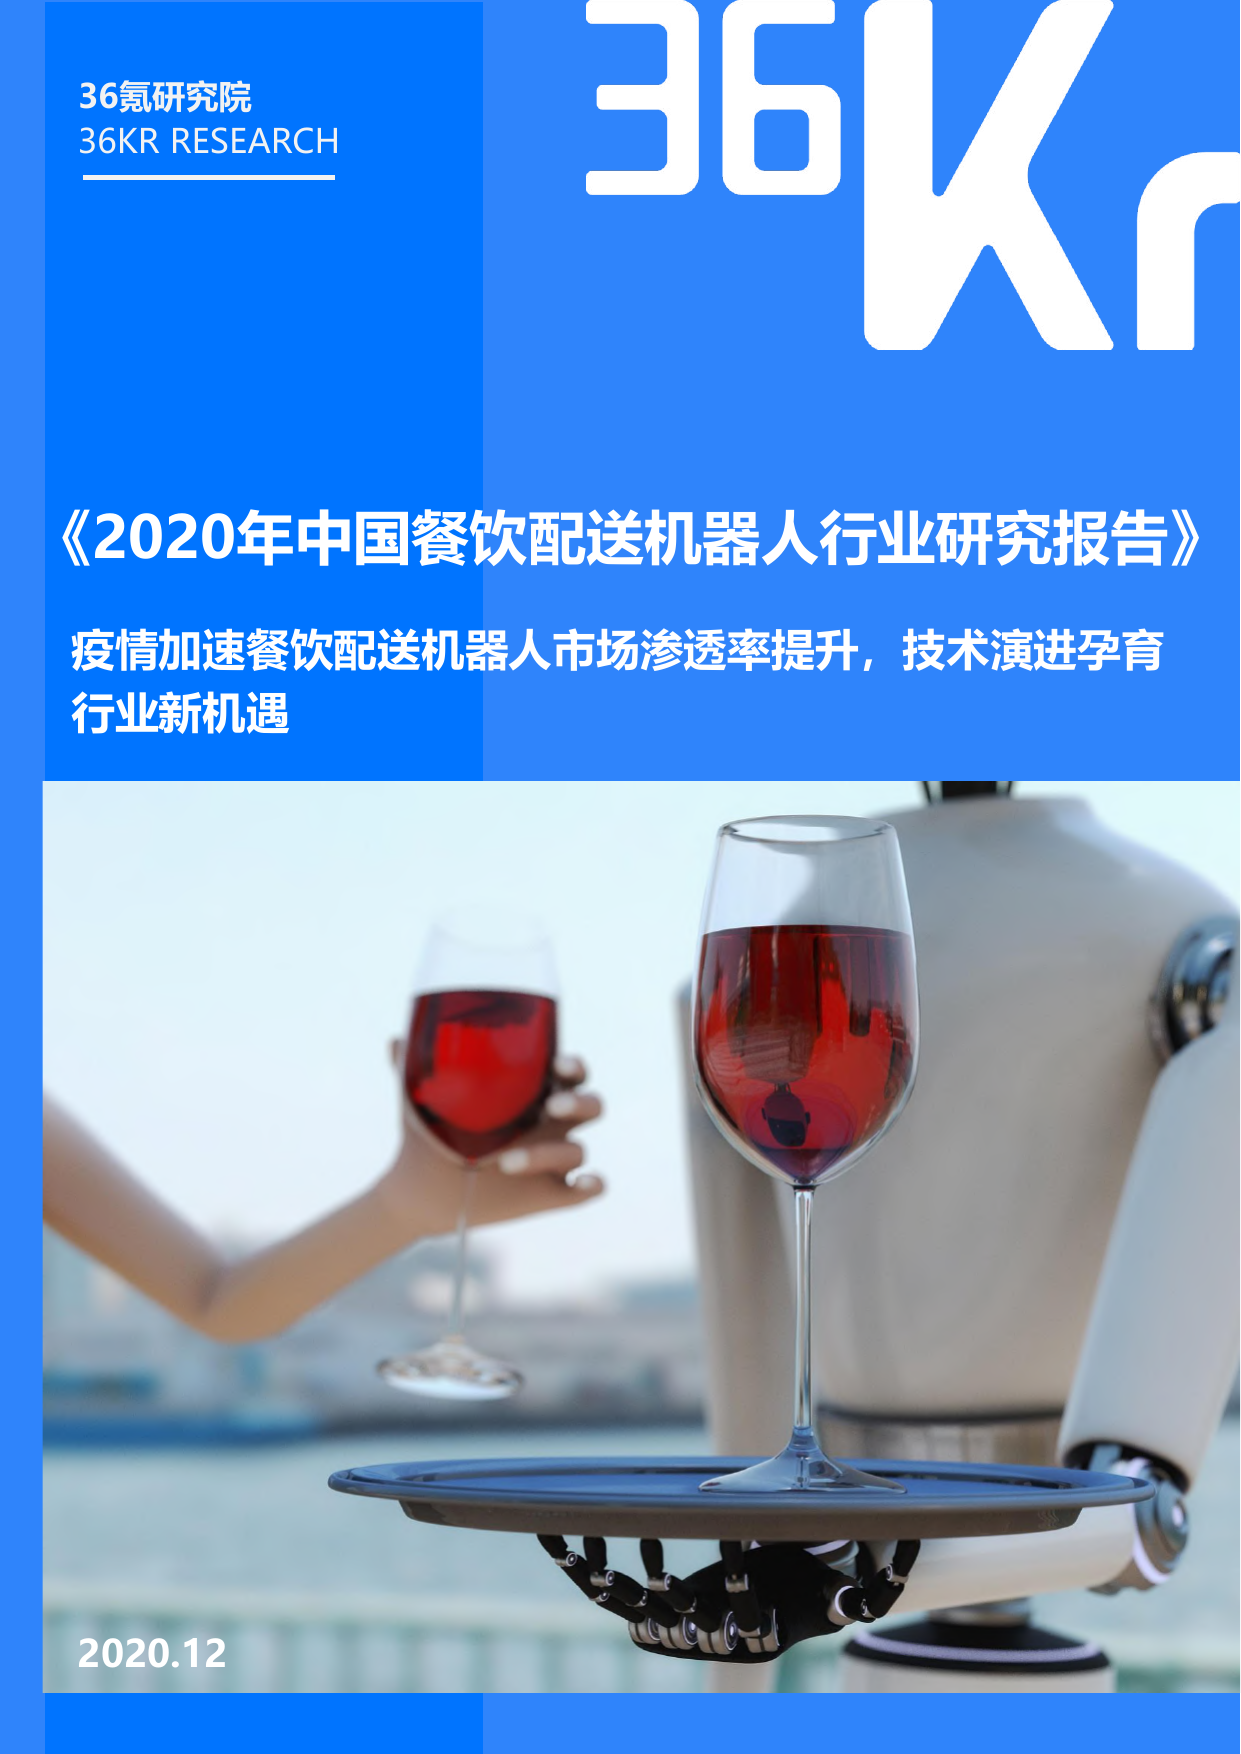 36KR-2020年中国餐饮配送机器人行业研究报告